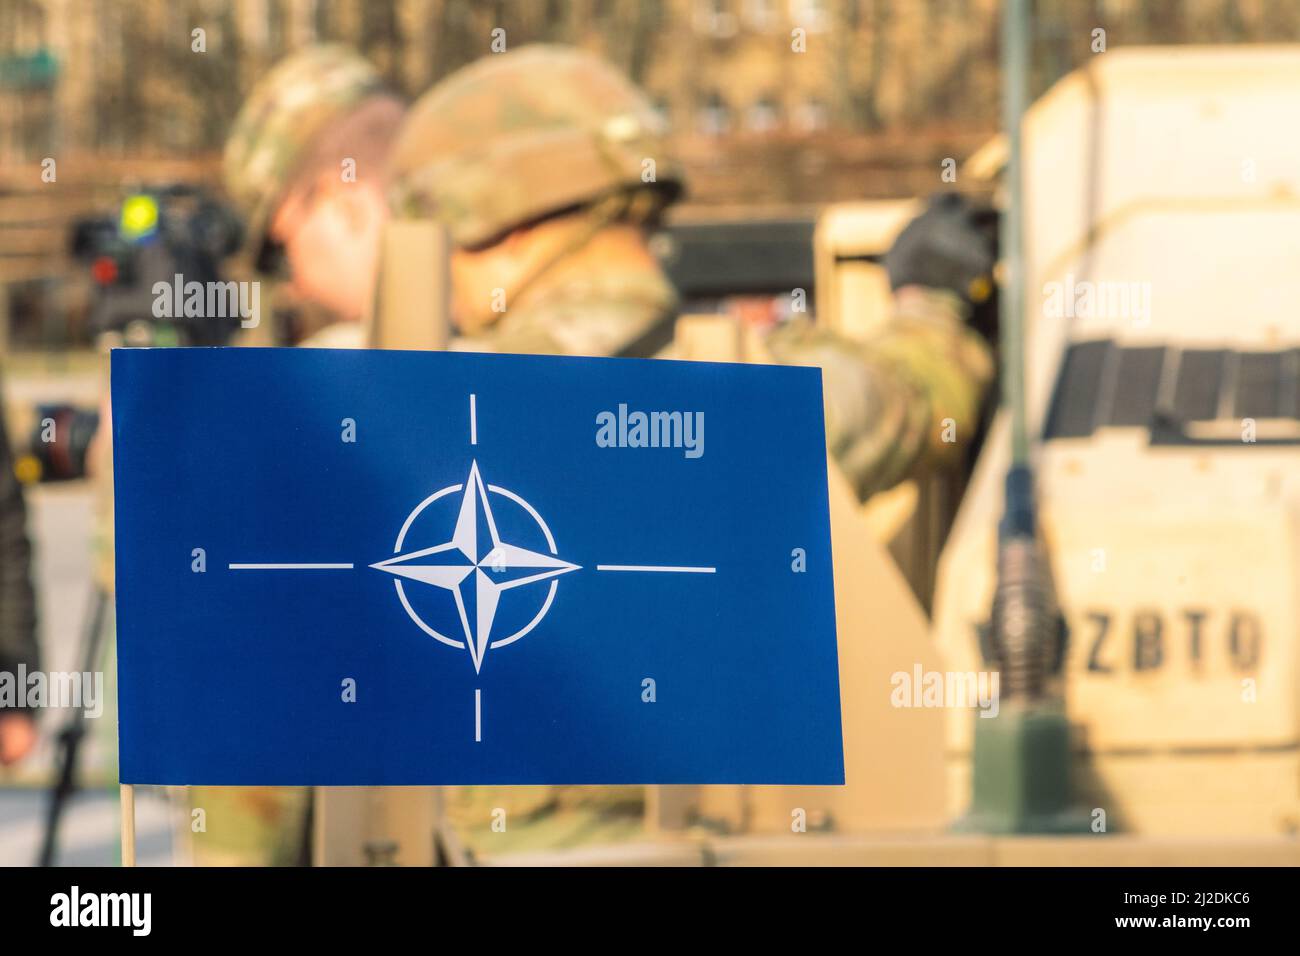 Flagge und Symbol der NATO, Organisation des Nordatlantikvertrags, Einheit zur Truppenintegration mit unfokussierten Soldaten mit Helmen und Militärfahrzeugen Stockfoto